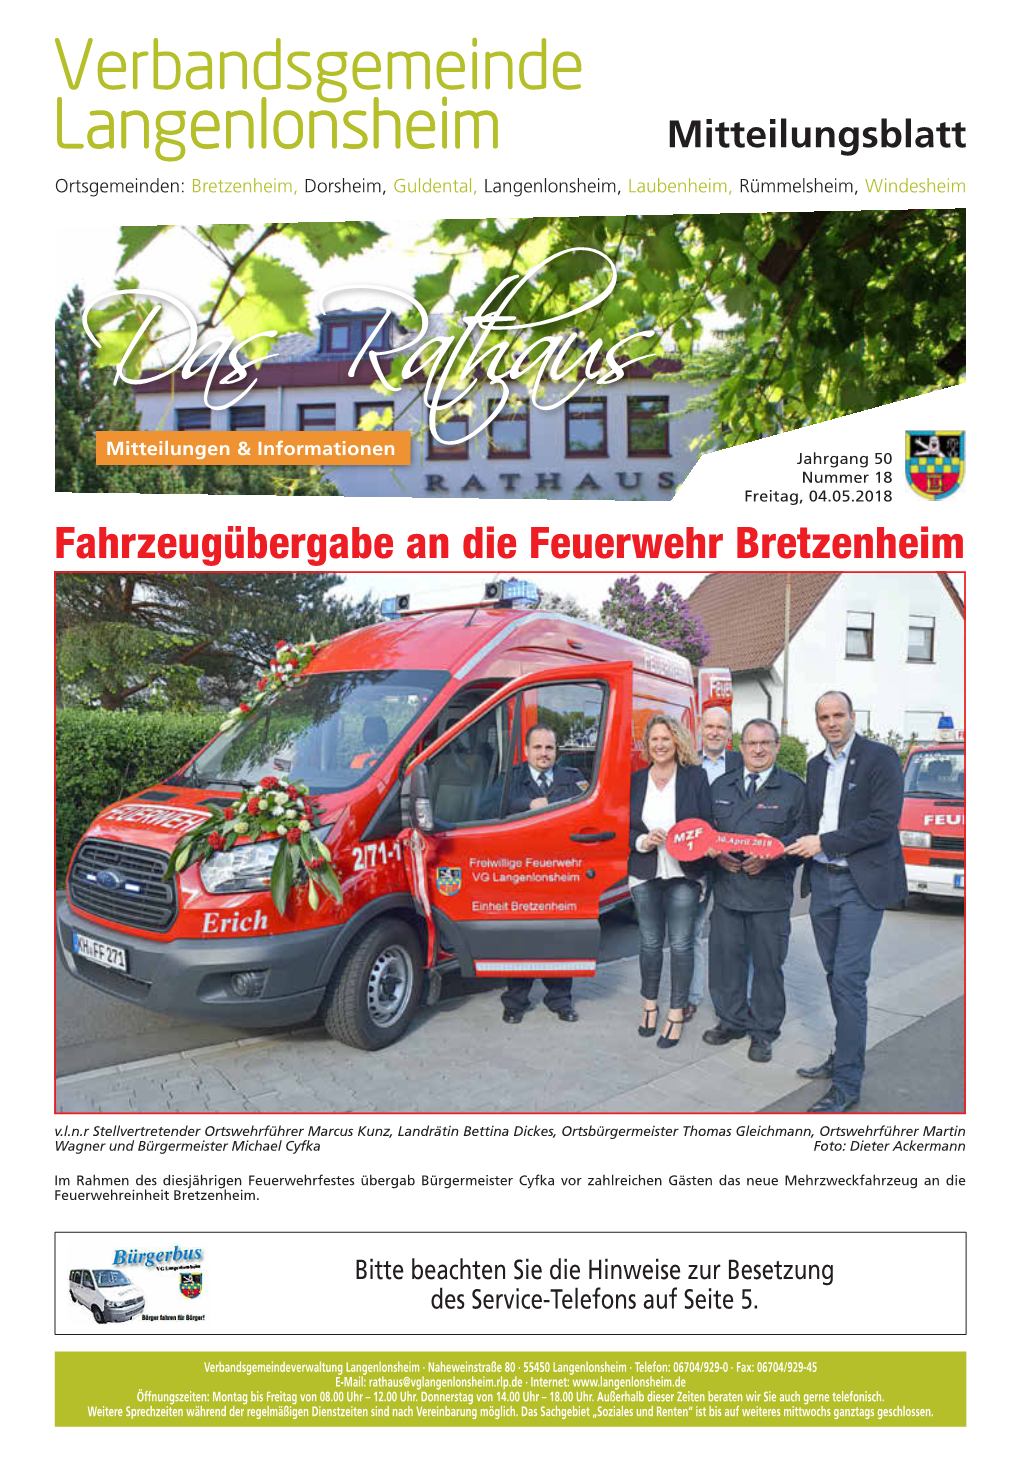 Fahrzeugübergabe an Die Feuerwehr Bretzenheim